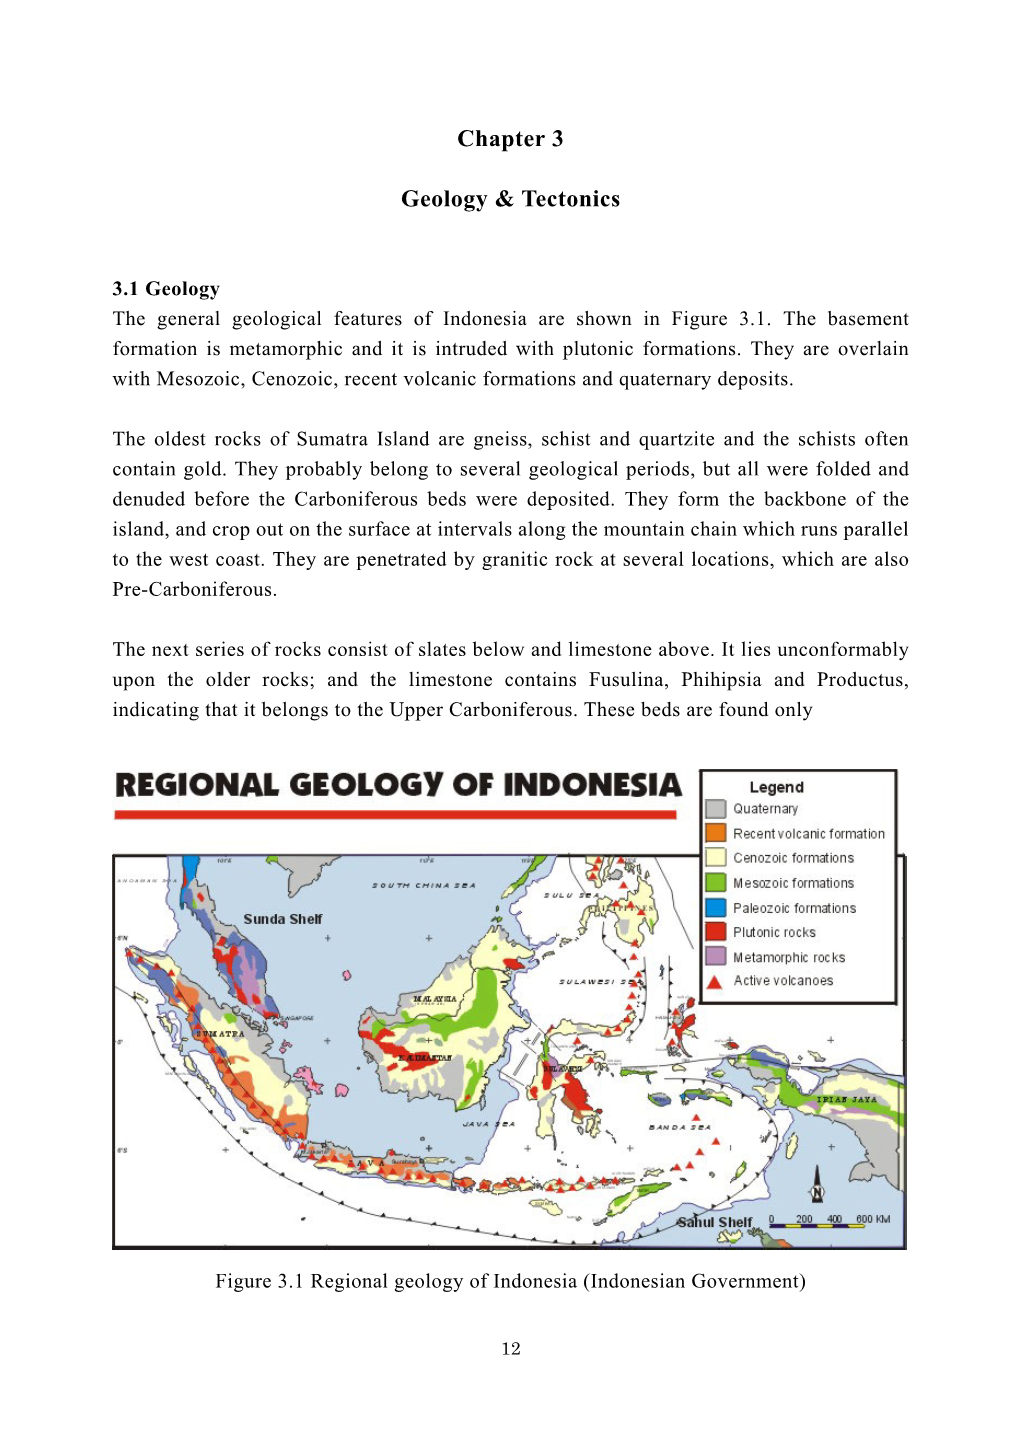 Chapter 3 Geology & Tectonics